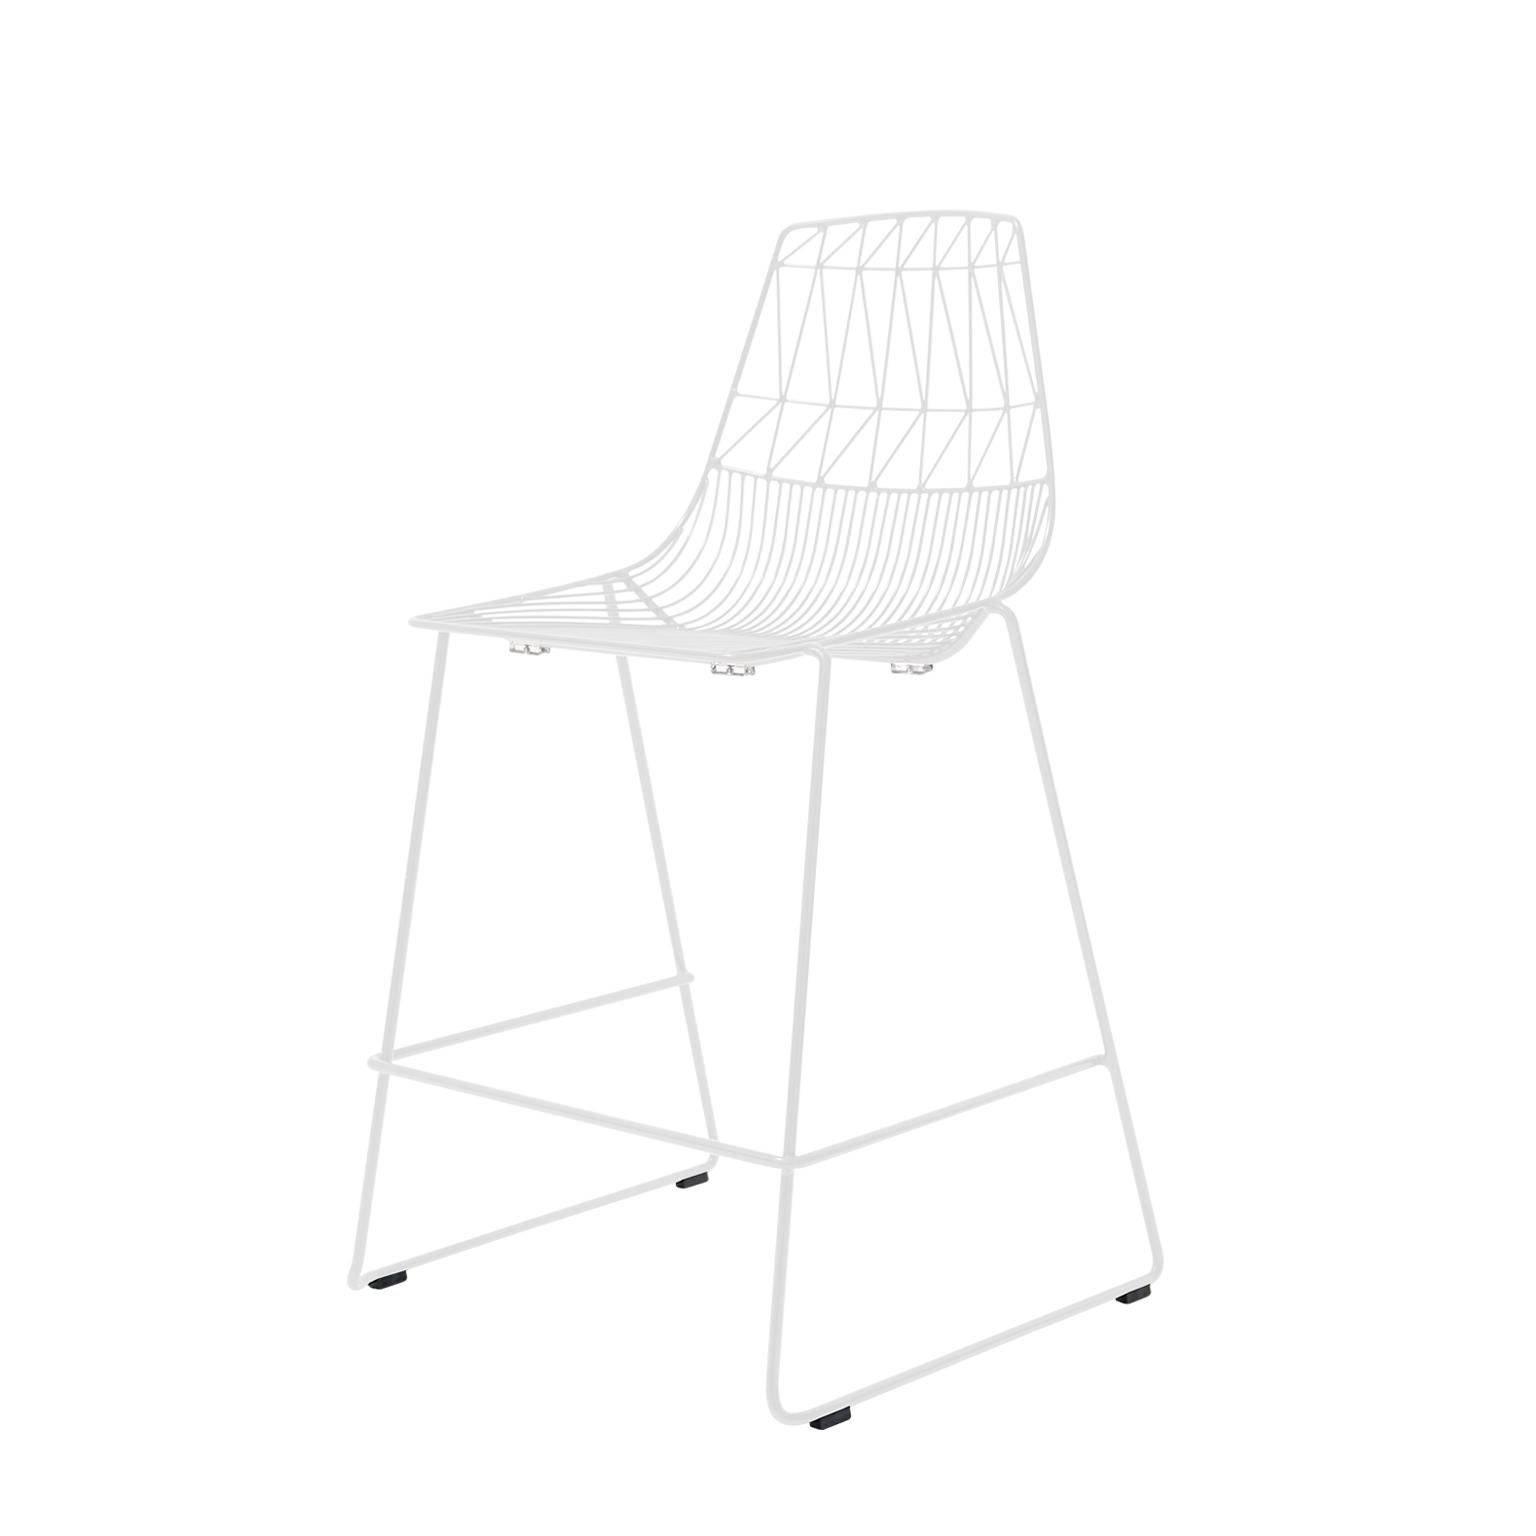 Meubles en fil métallique Bend Goods
Une autre variante de la chaise Lucy de Bend Goods, le tabouret empilable Lucy Counter est un tabouret en fil métallique dont la forme unique permet de le déplacer et de le réorganiser facilement. Ce tabouret de